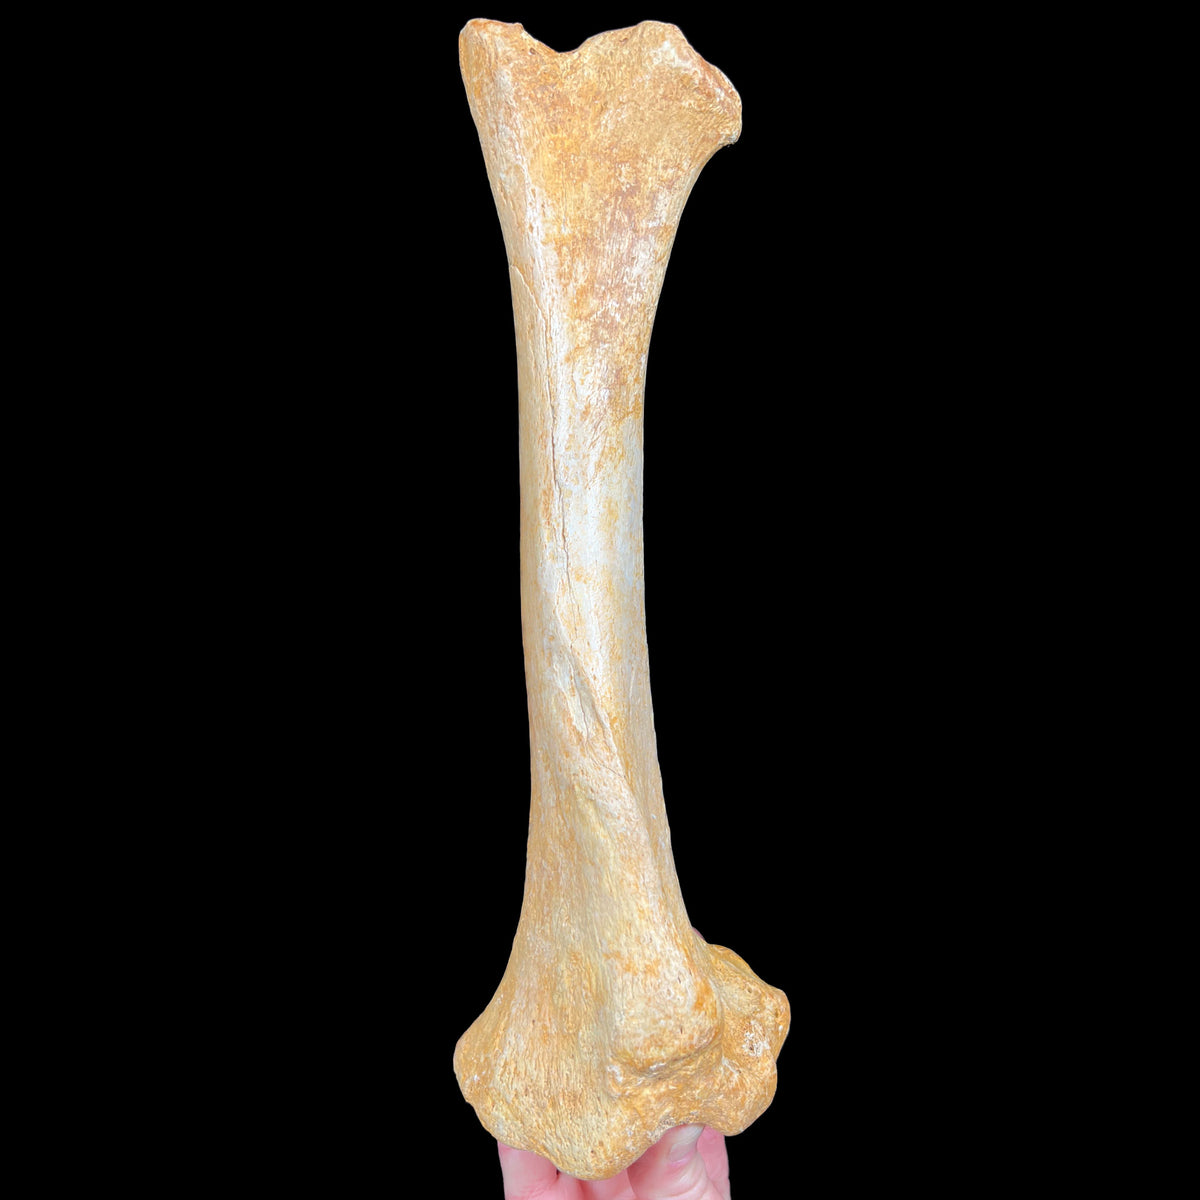 Ursus spelaeus fossil leg bone